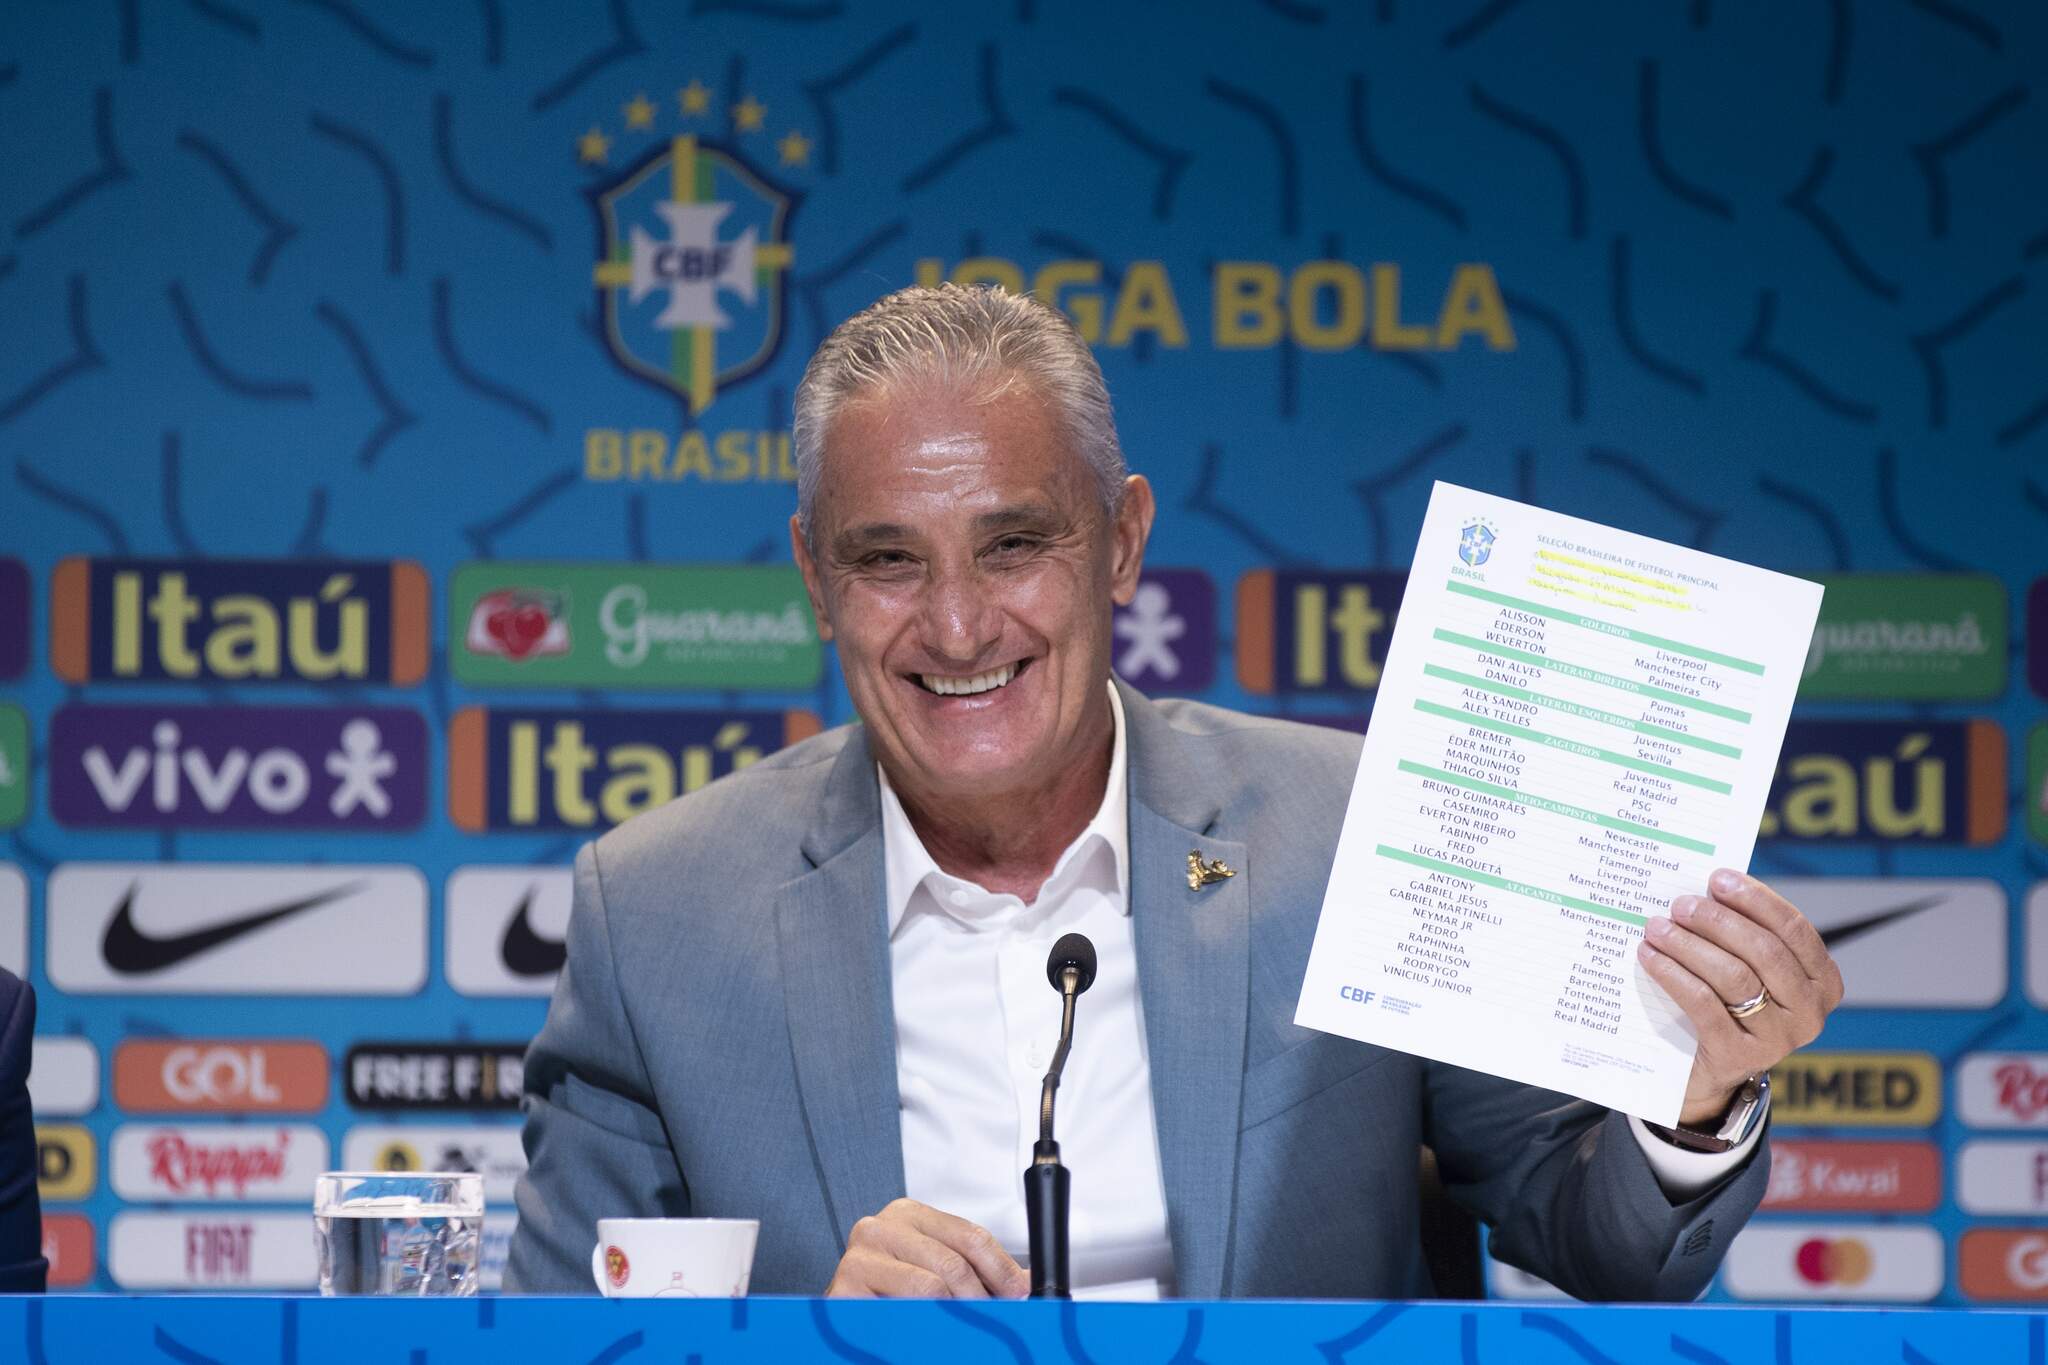 Copa do Mundo 2022: confira a lista de convocados da seleção brasileira -  Dia Online